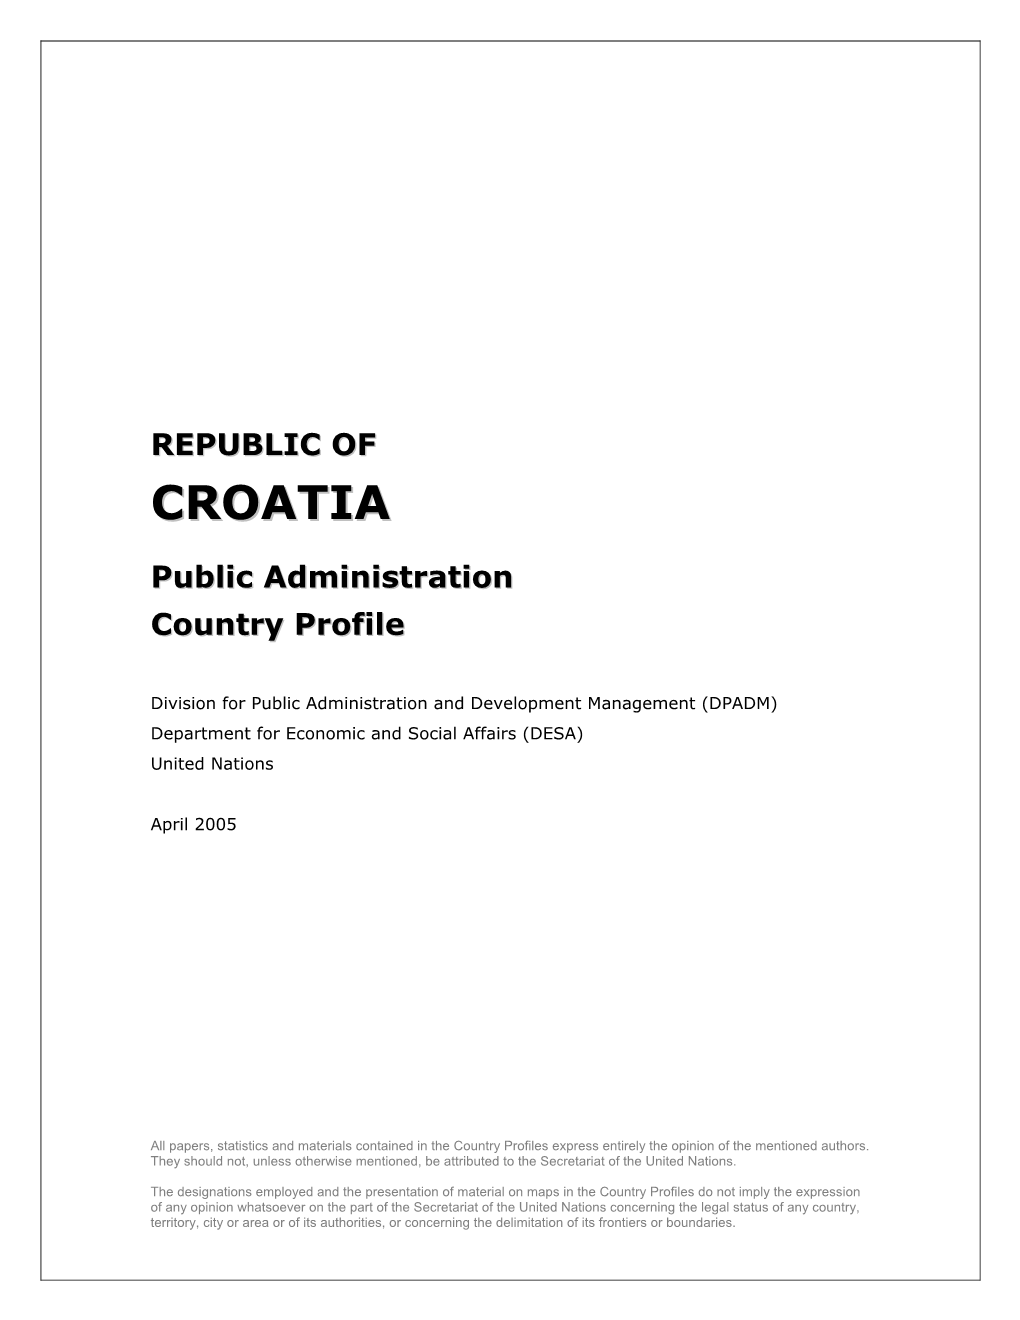 Croatia Public Administration Profile